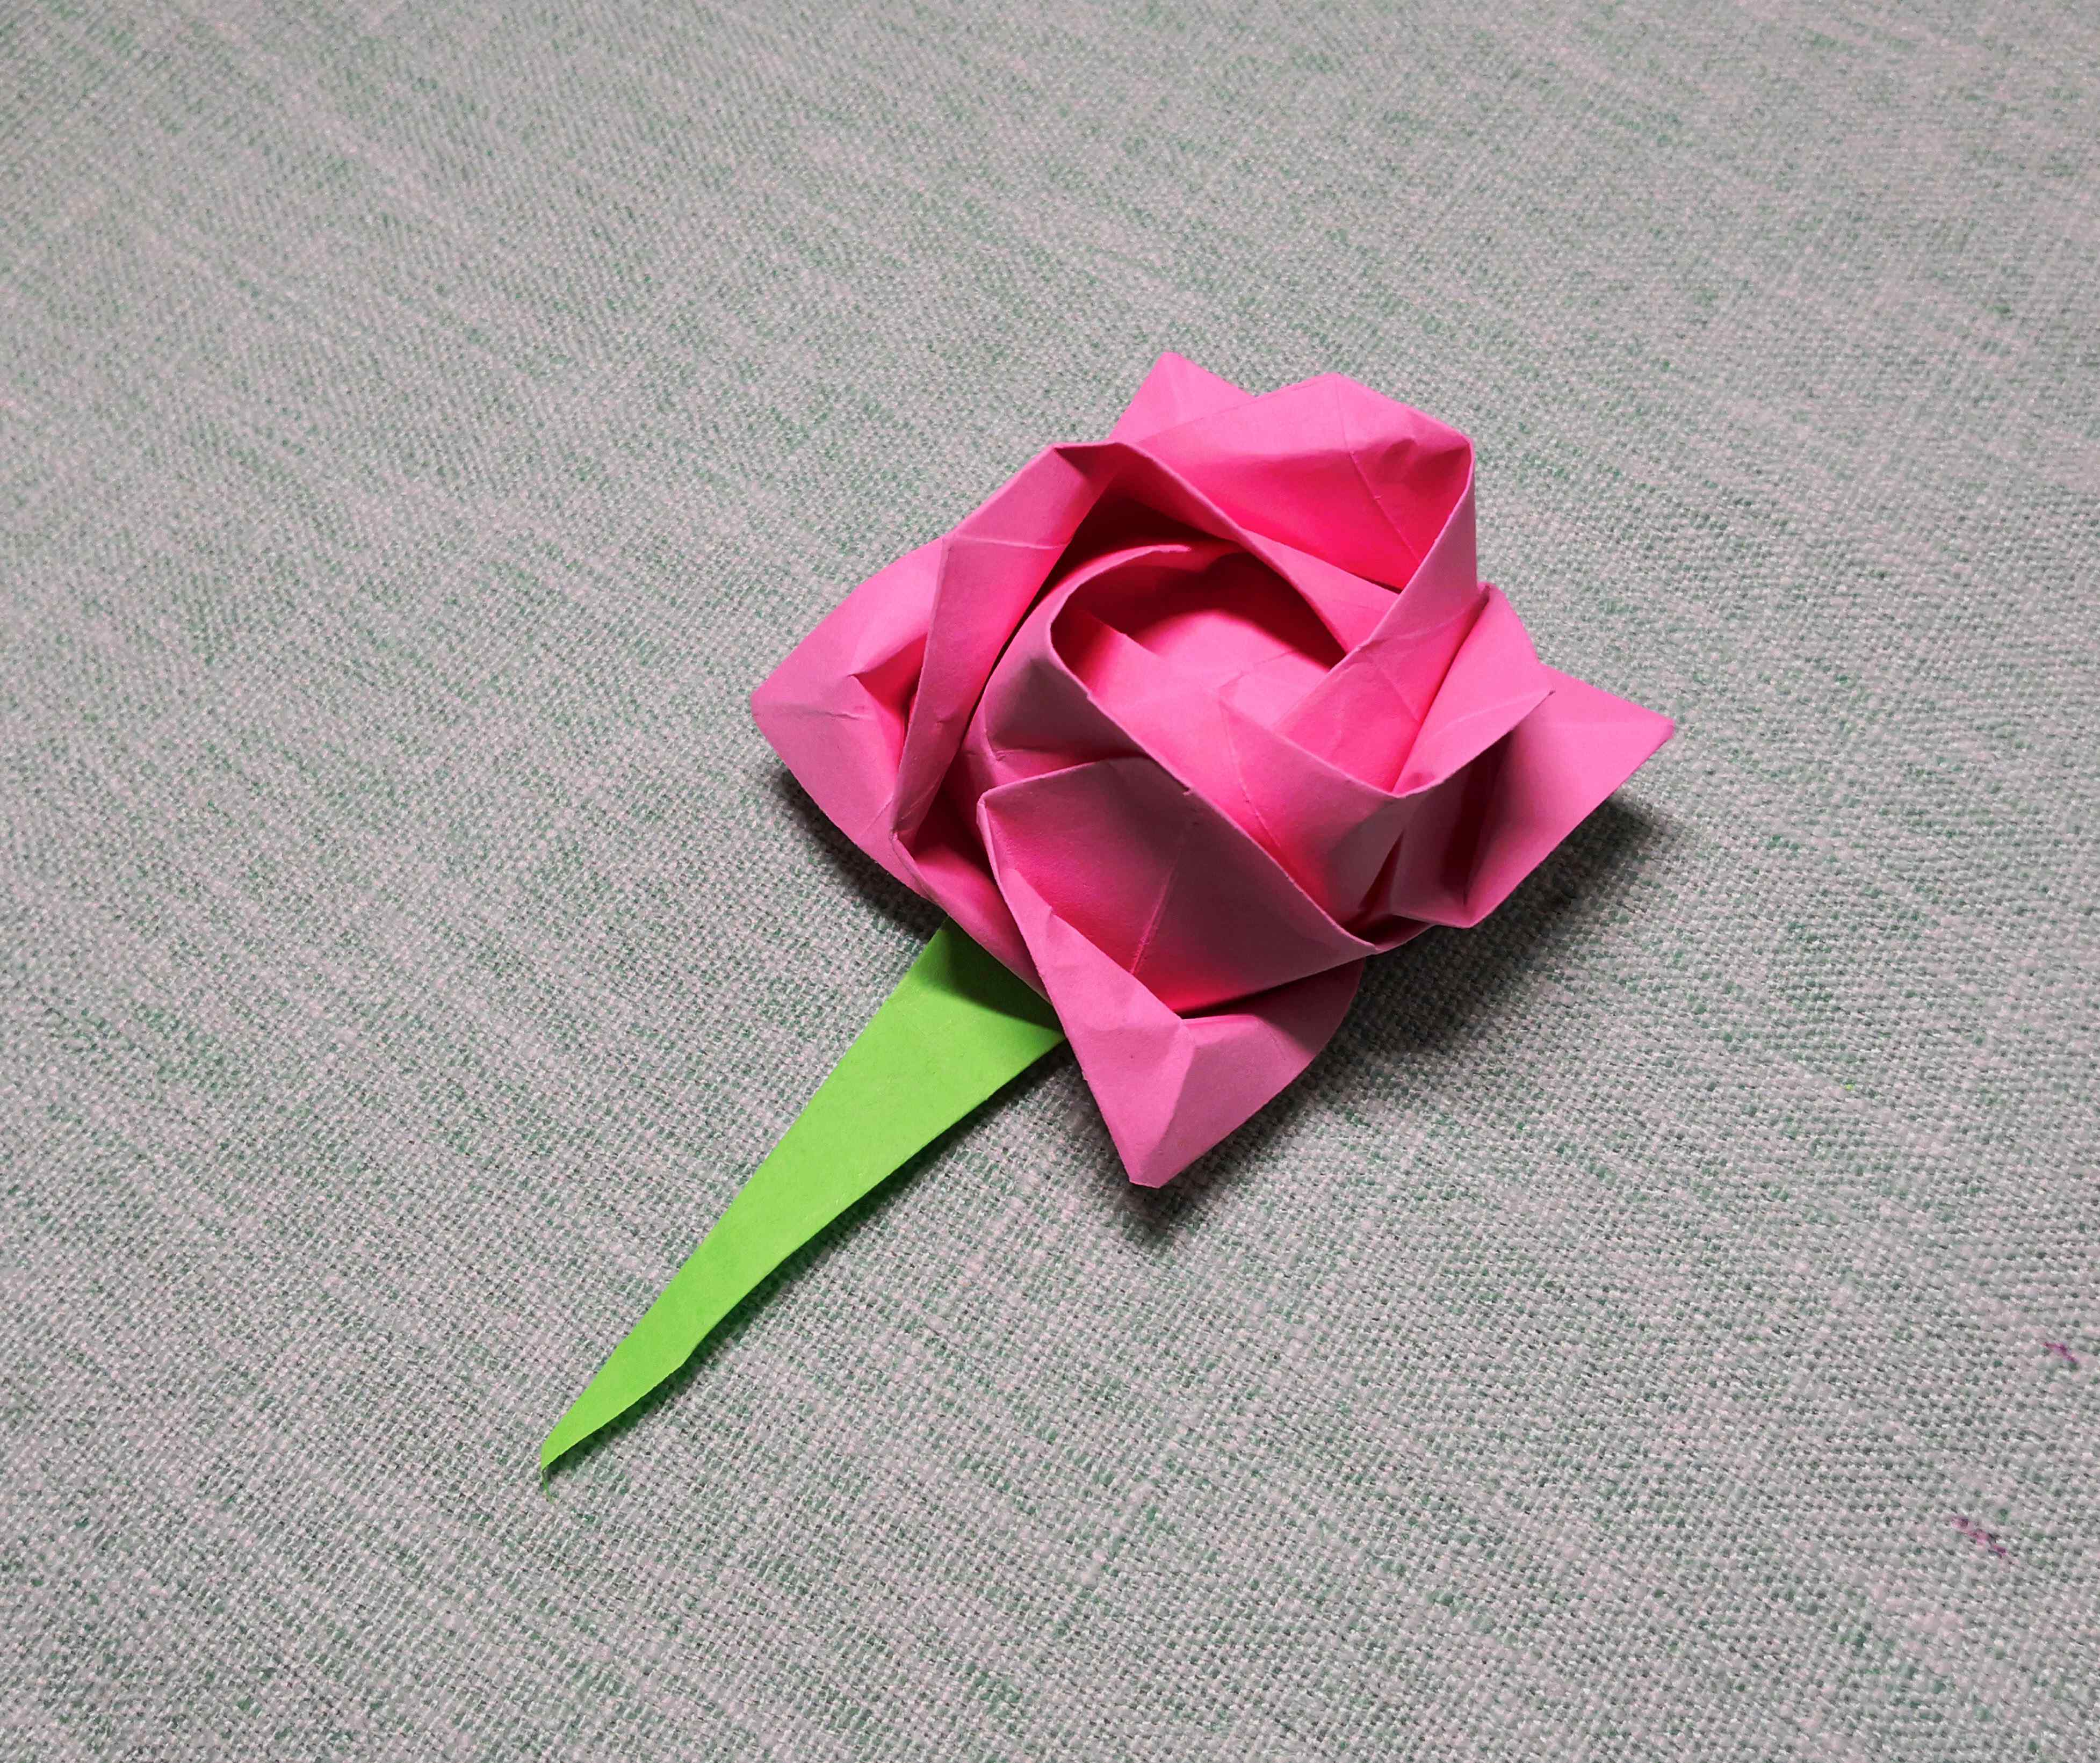 川崎玫瑰视频教程 川崎玫瑰超清详细折纸教程,适合新手的玫瑰花经典折法